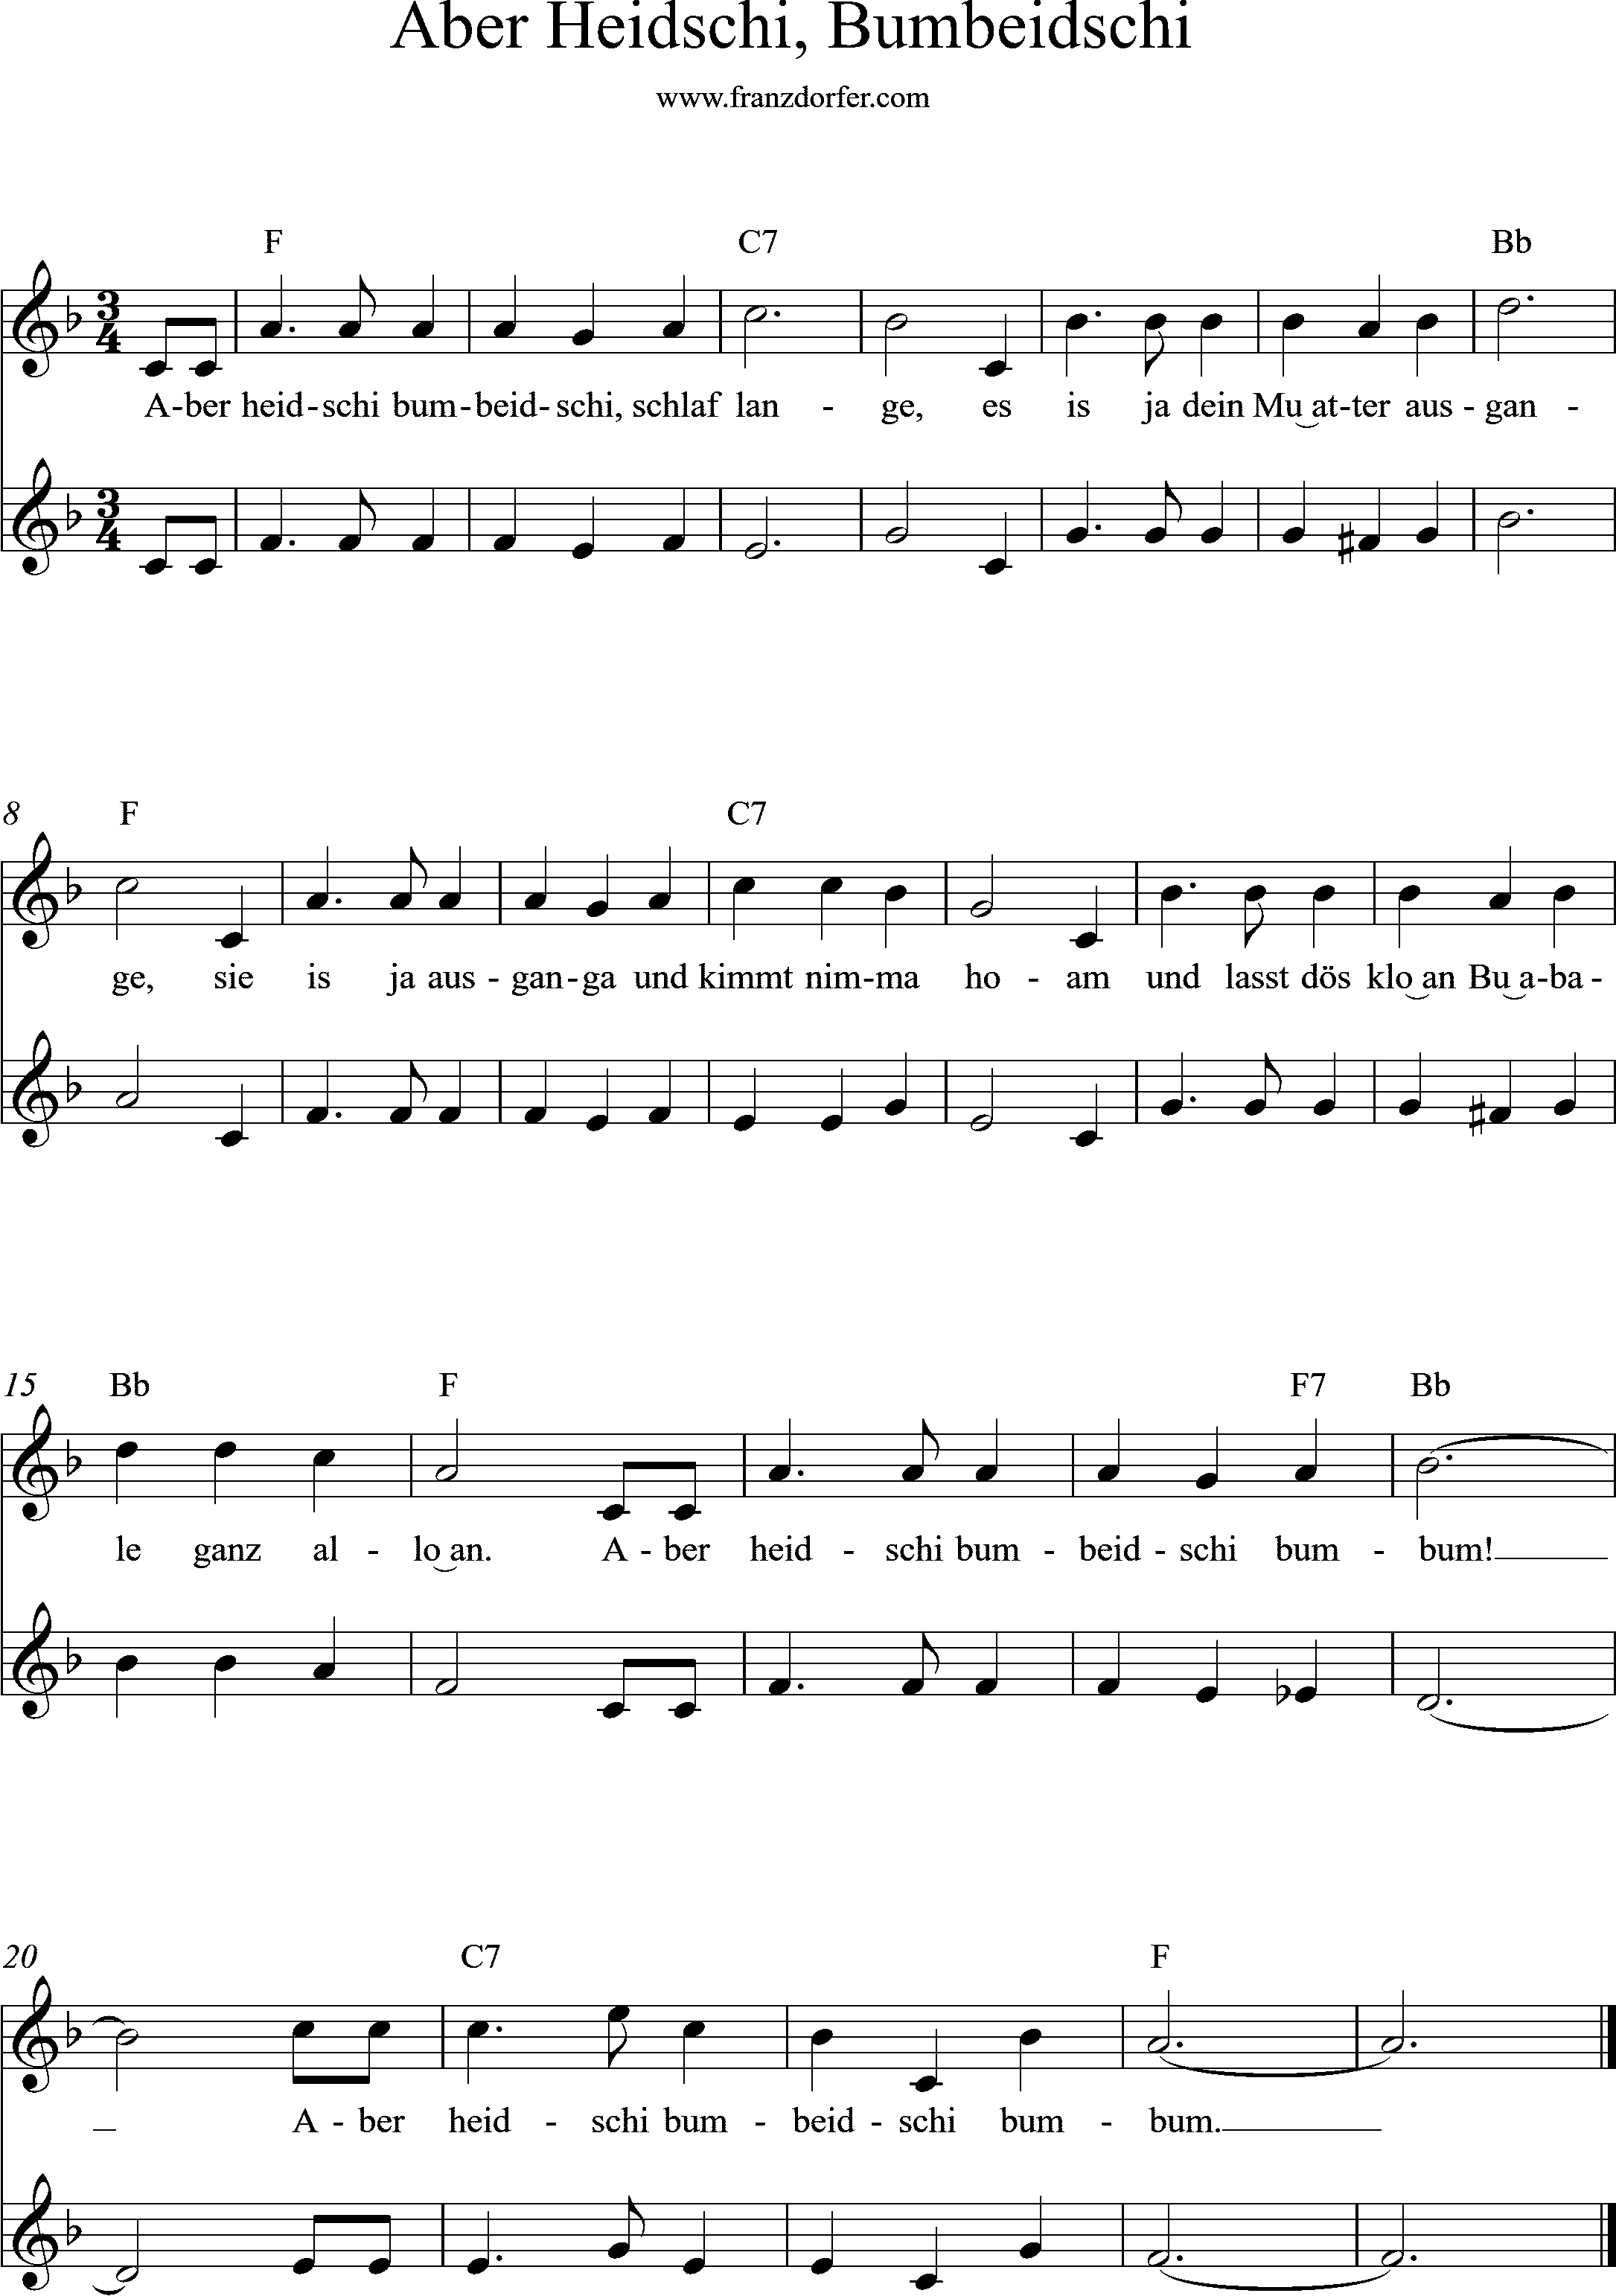 Trompetze, Tenorhoprn- Noten  D-Dur, Heidschi Bumbeidschi